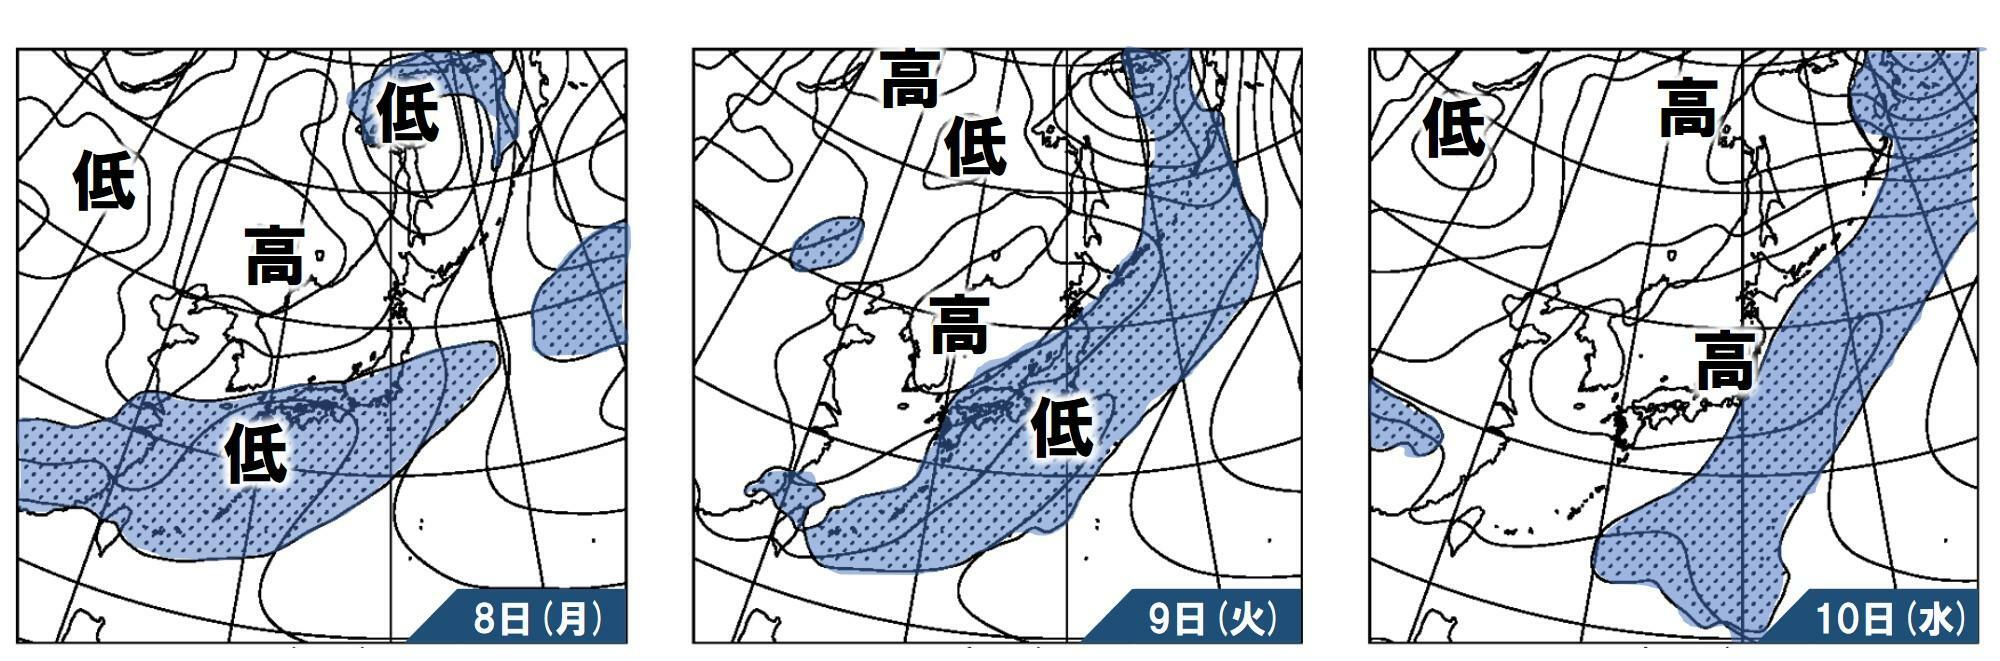 4月8日～10日にかけての気圧配置と降水の予想（気象庁資料を元に作成）。影がかけられたところは降水が予想されているところ。